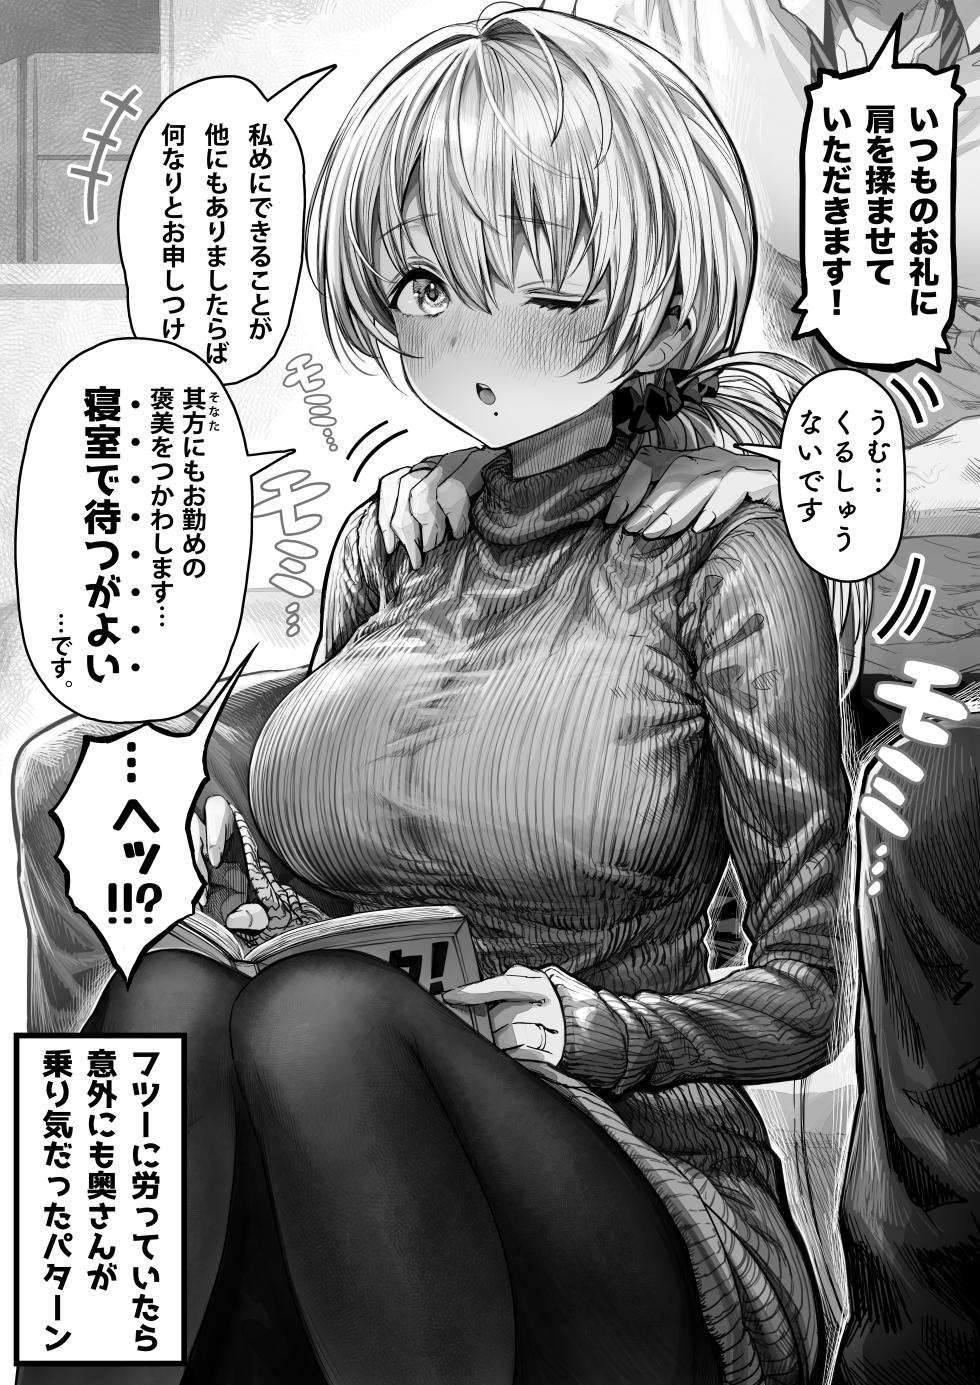 [gibachan] Okusan manga collection - Page 37